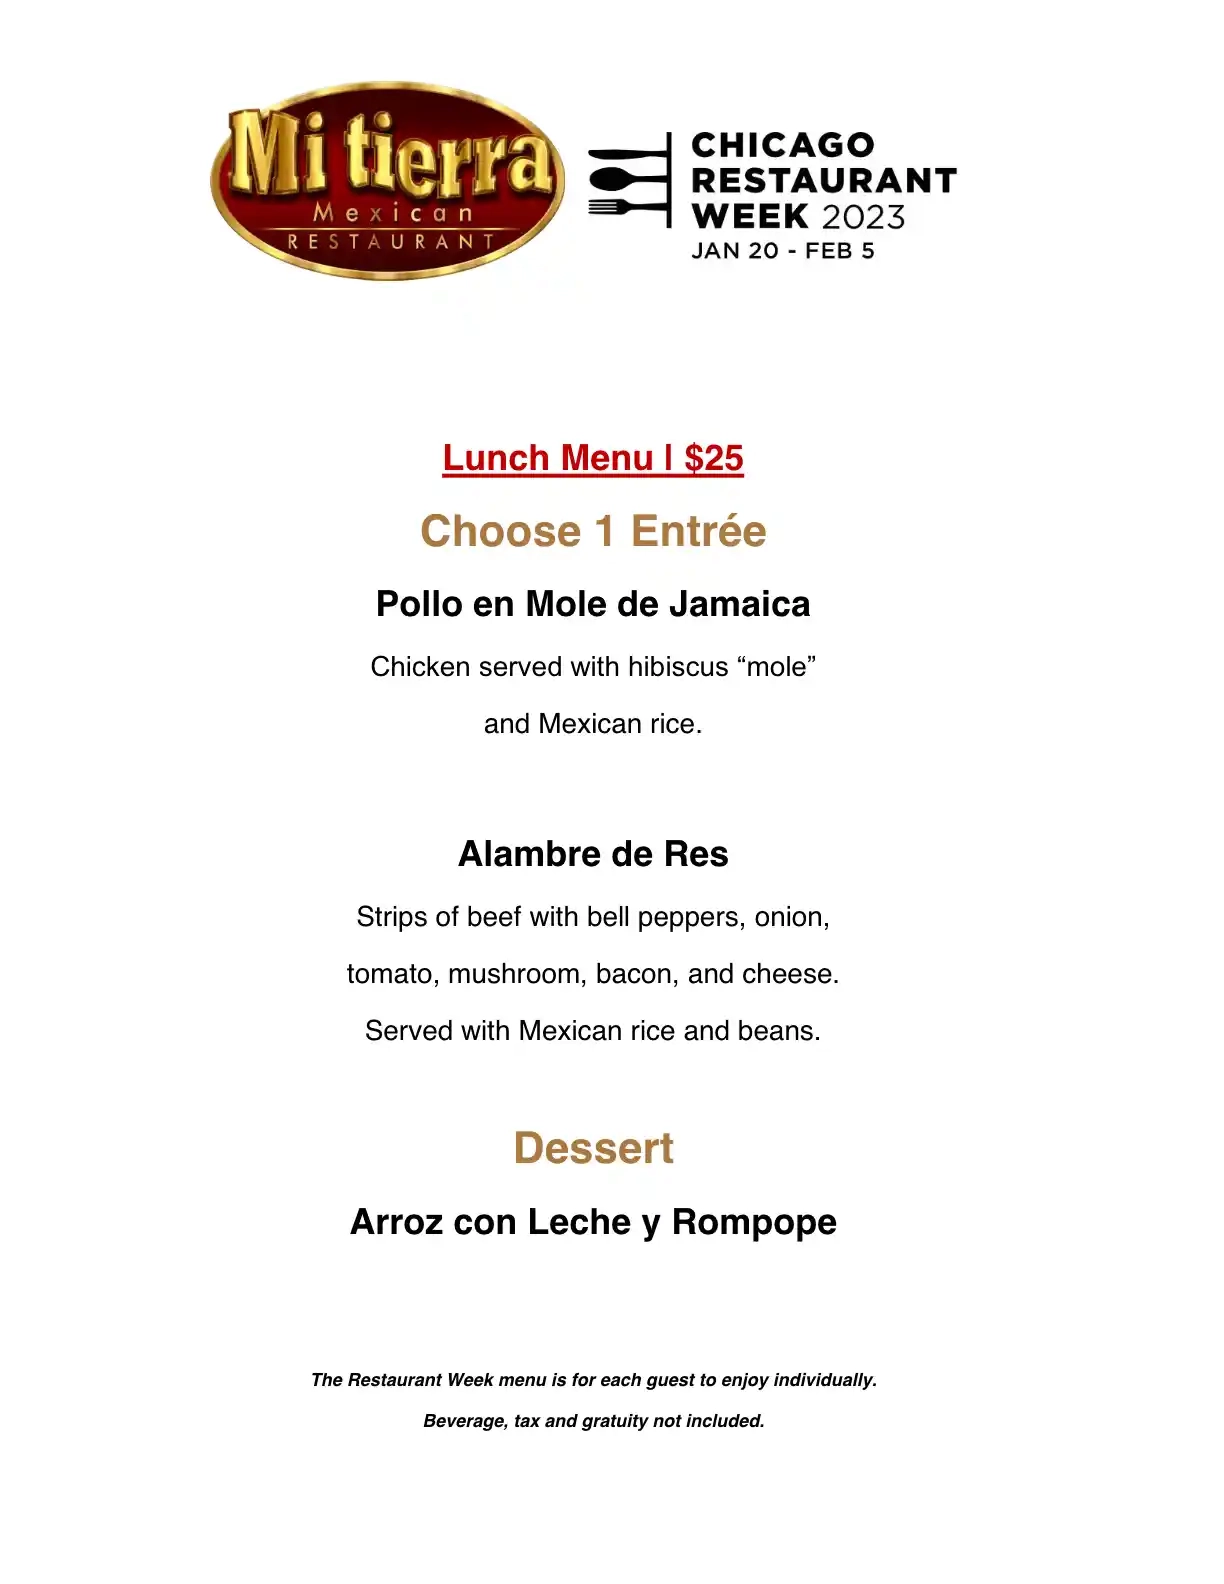 Chicago Restaurant Week 2023 Menu Mi Tierra Lunch